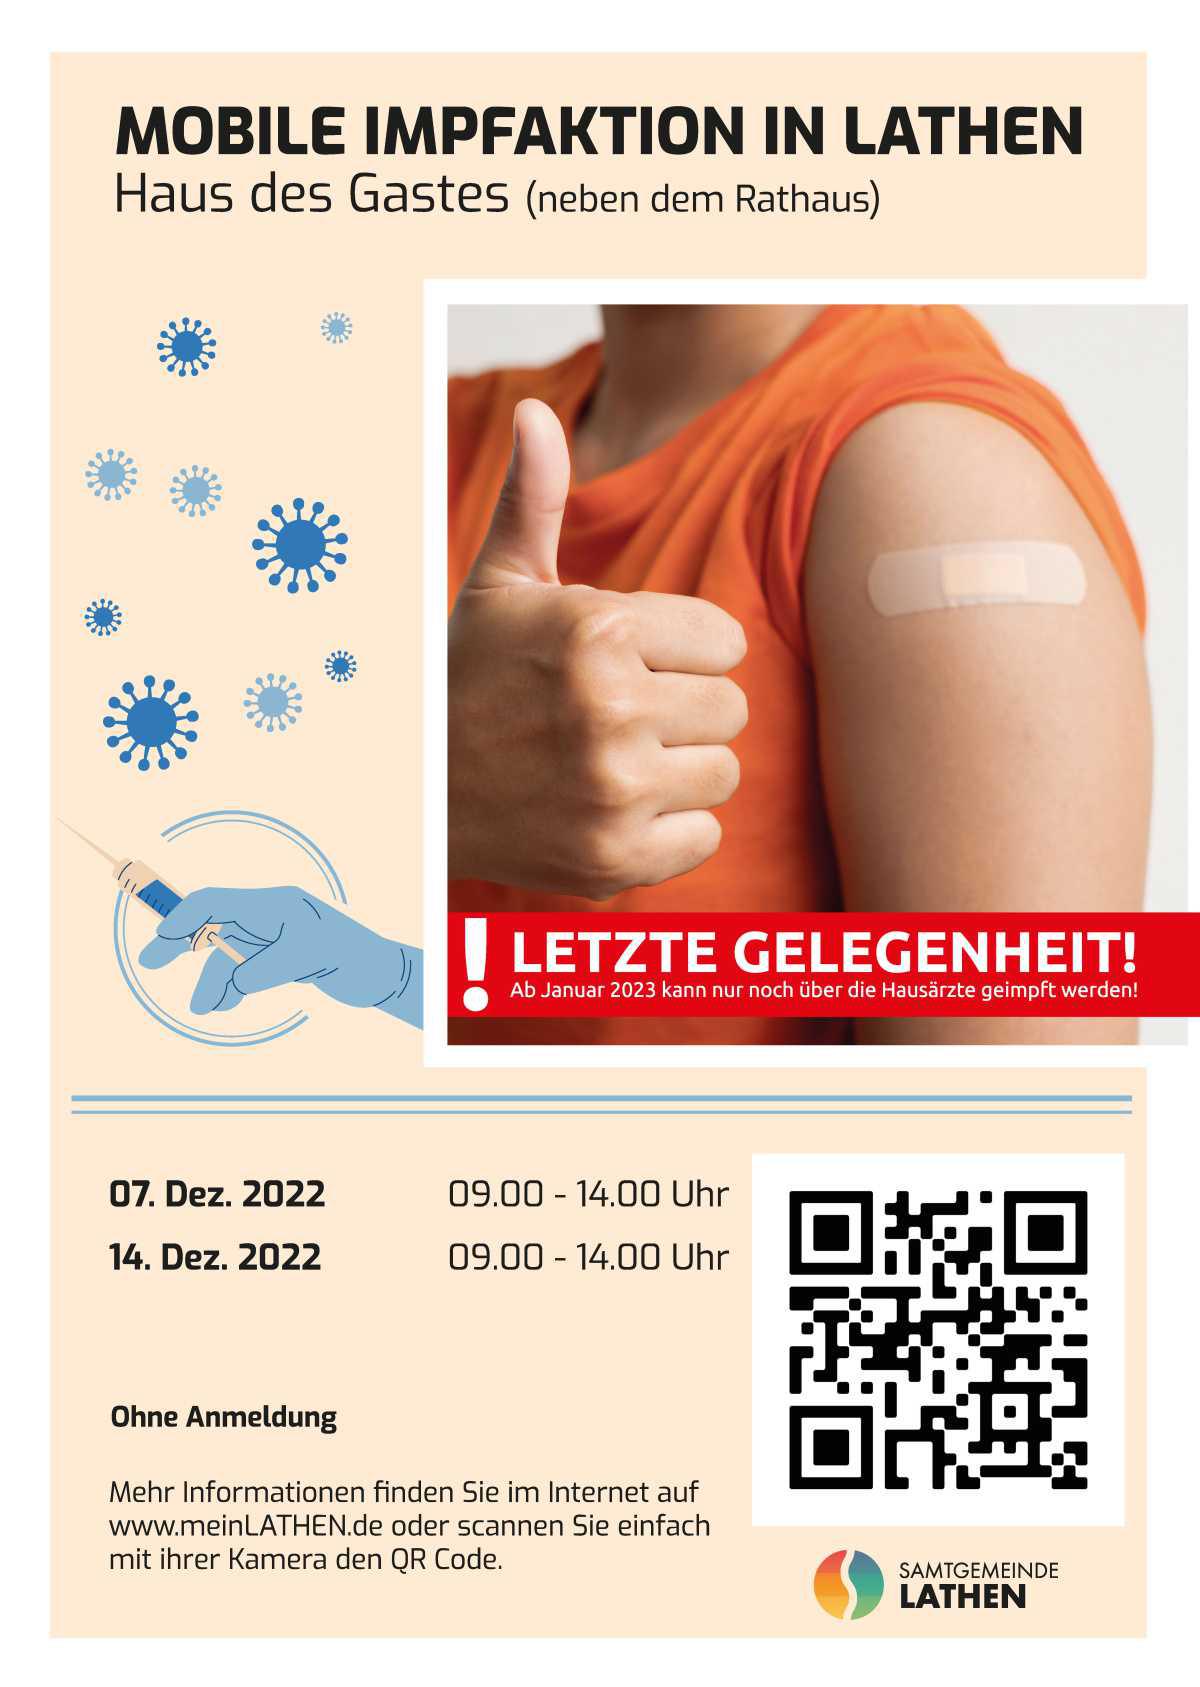 Mobile Impfaktionen in Lathen – letzte Gelegenheit im Dezember!